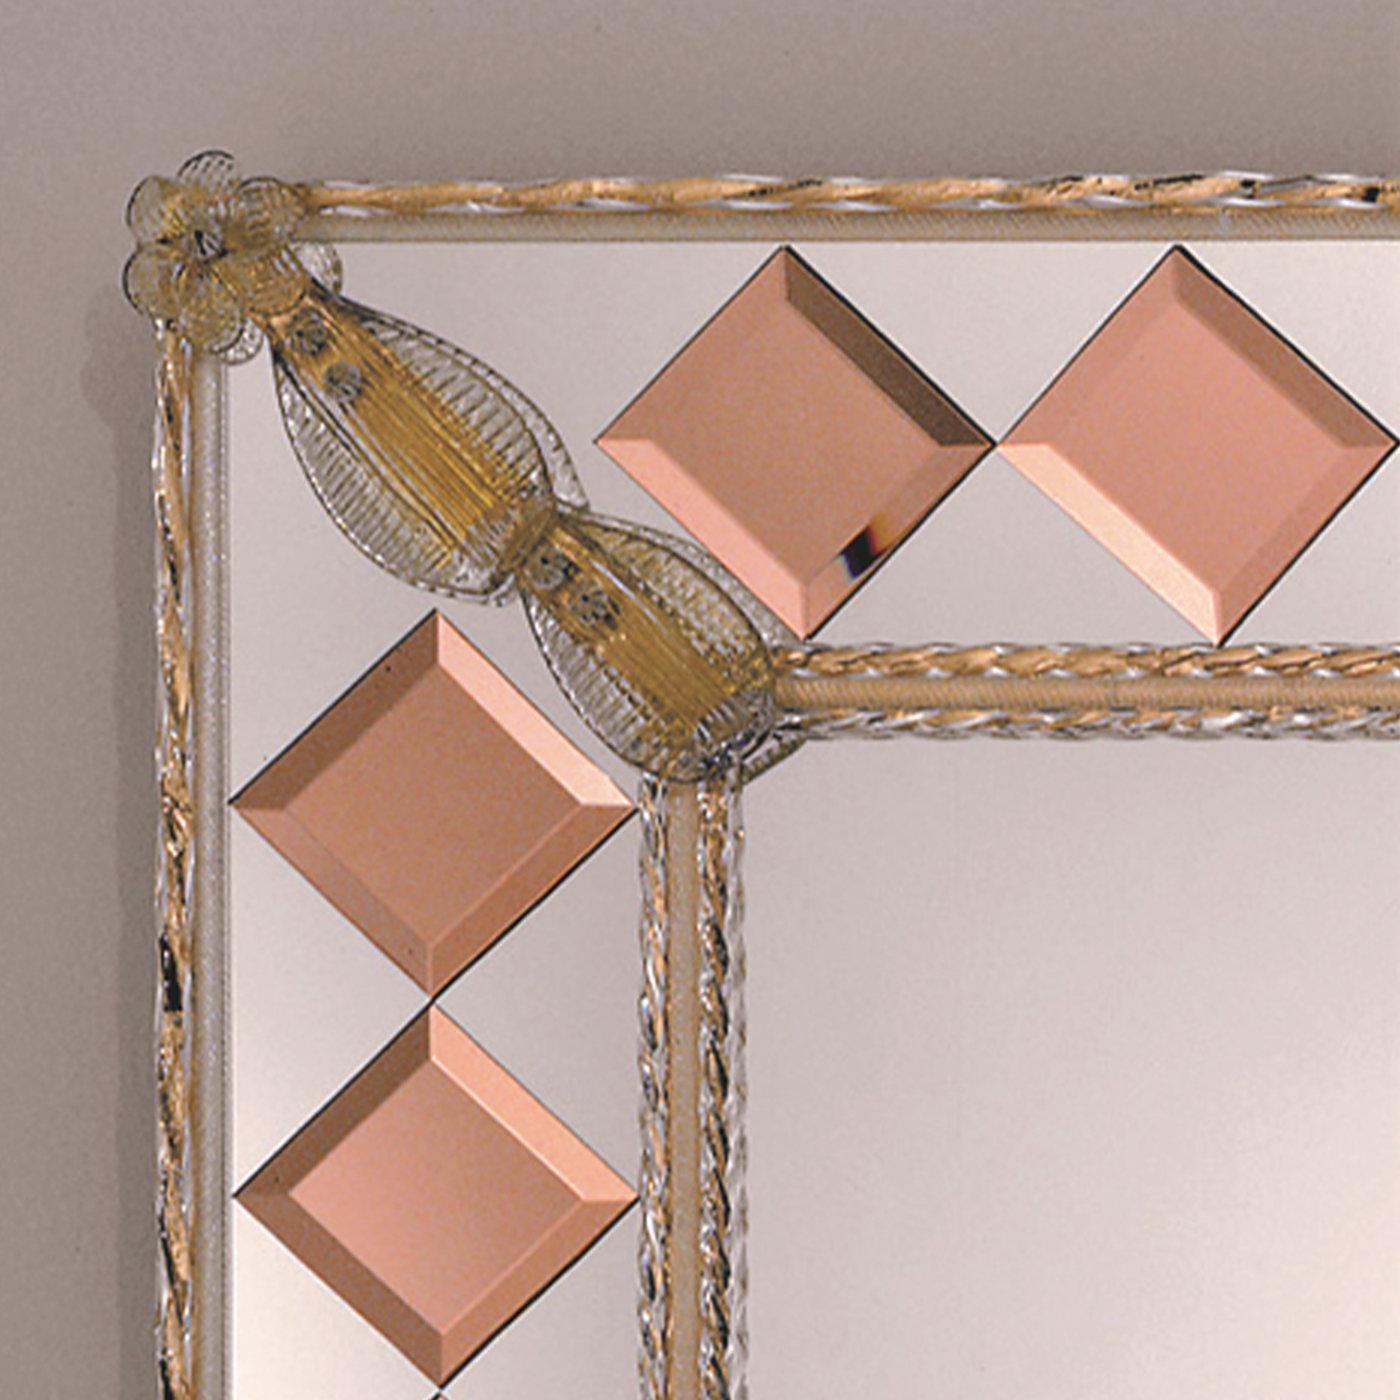 Ce miroir rectangulaire est la vitrine d'un savoir-faire inégalé réalisé par les maîtres verriers de Murano selon les techniques traditionnelles du XIVe siècle. Le large cadre qui entoure le miroir est orné de délicates fleurs et feuilles en verre